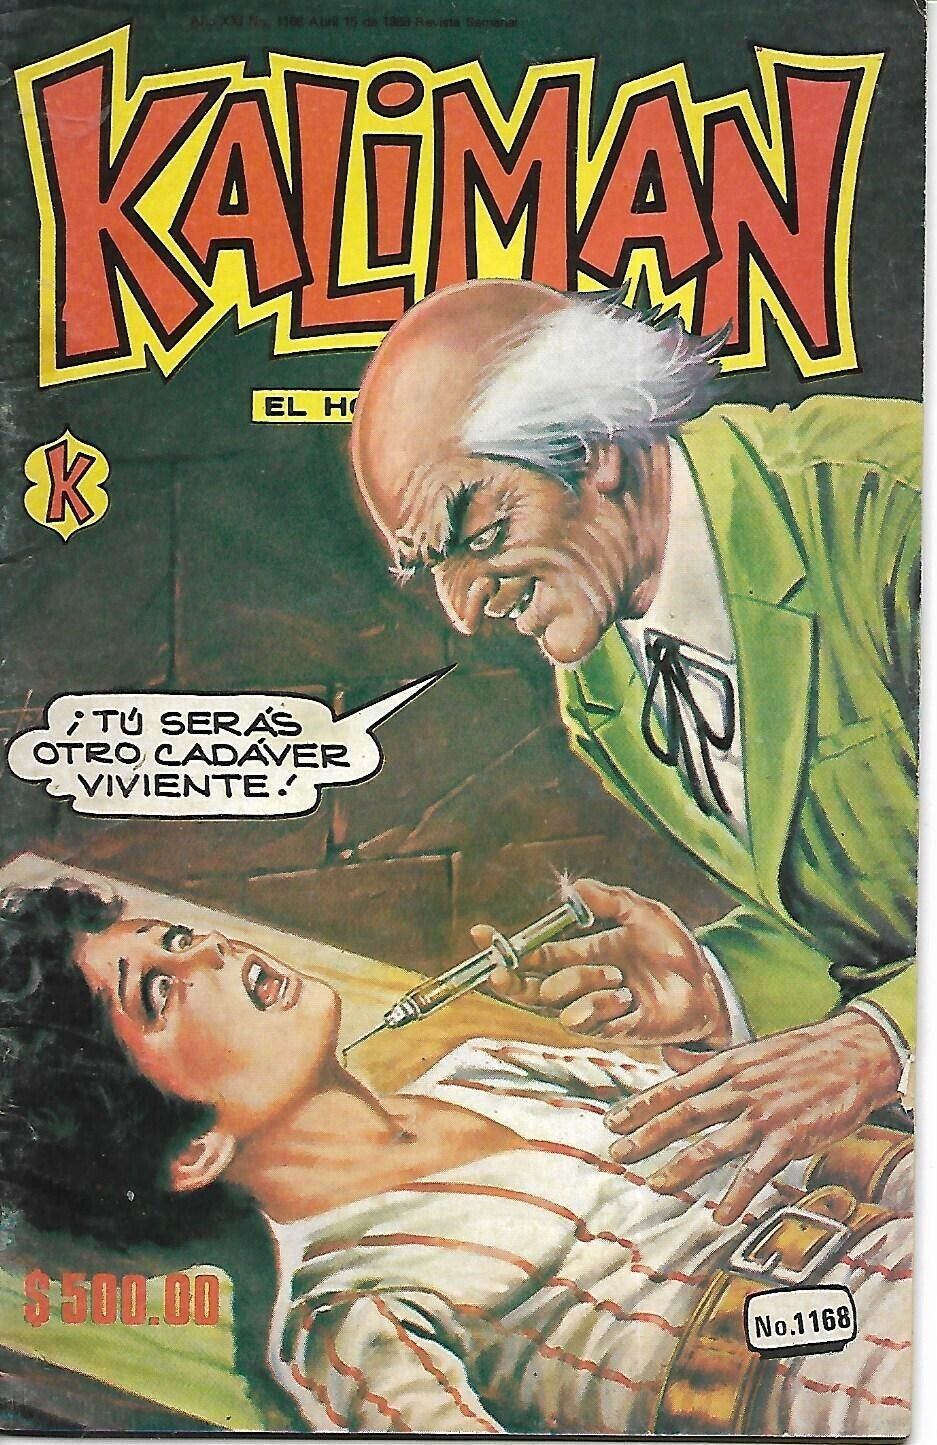 Kaliman El Hombre Increible #1168 - Abril 15, 1988 - Mexico